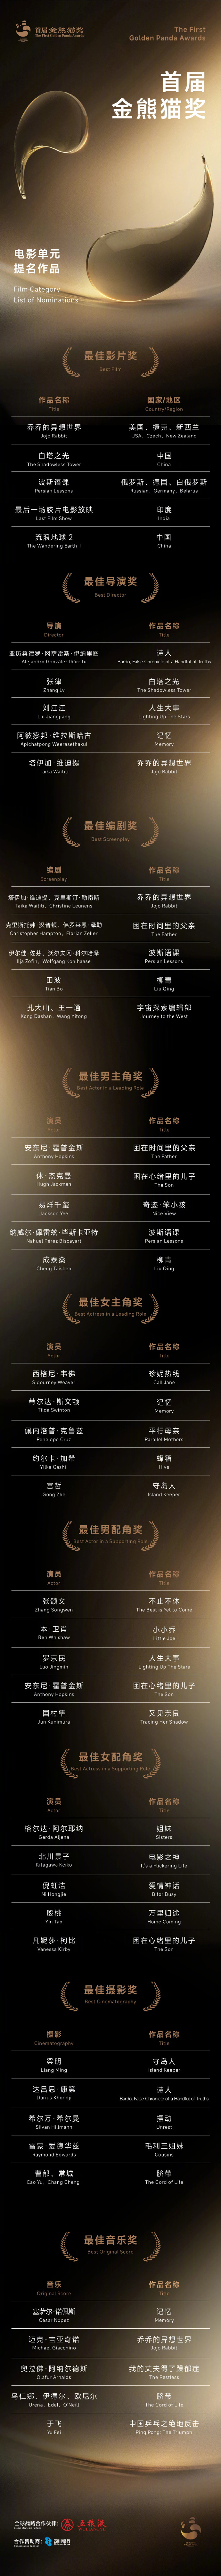 首届金熊猫奖电影单元提名名单揭晓 共9项大奖